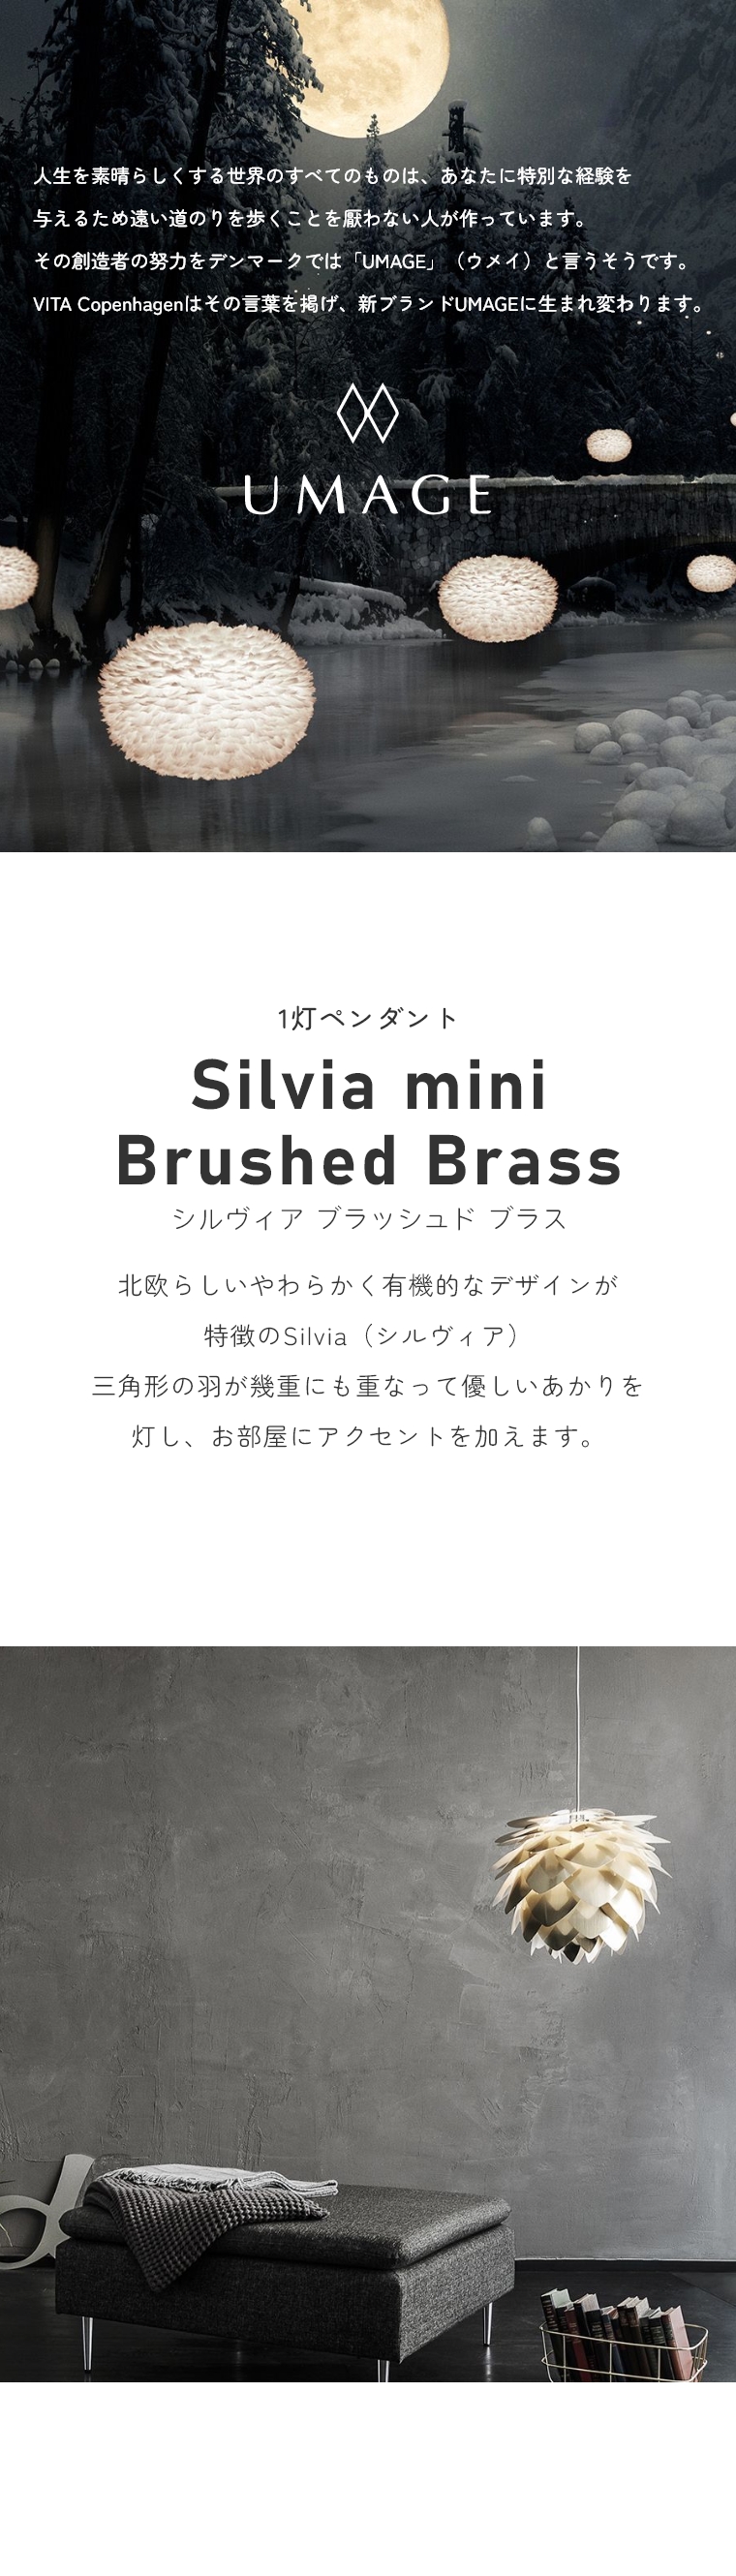 keCXg̃VvȃCg UMAGE(EC) Silvia mini Brushed BrassiVBA~jubVhuXj V[OCg 2071 GbNX